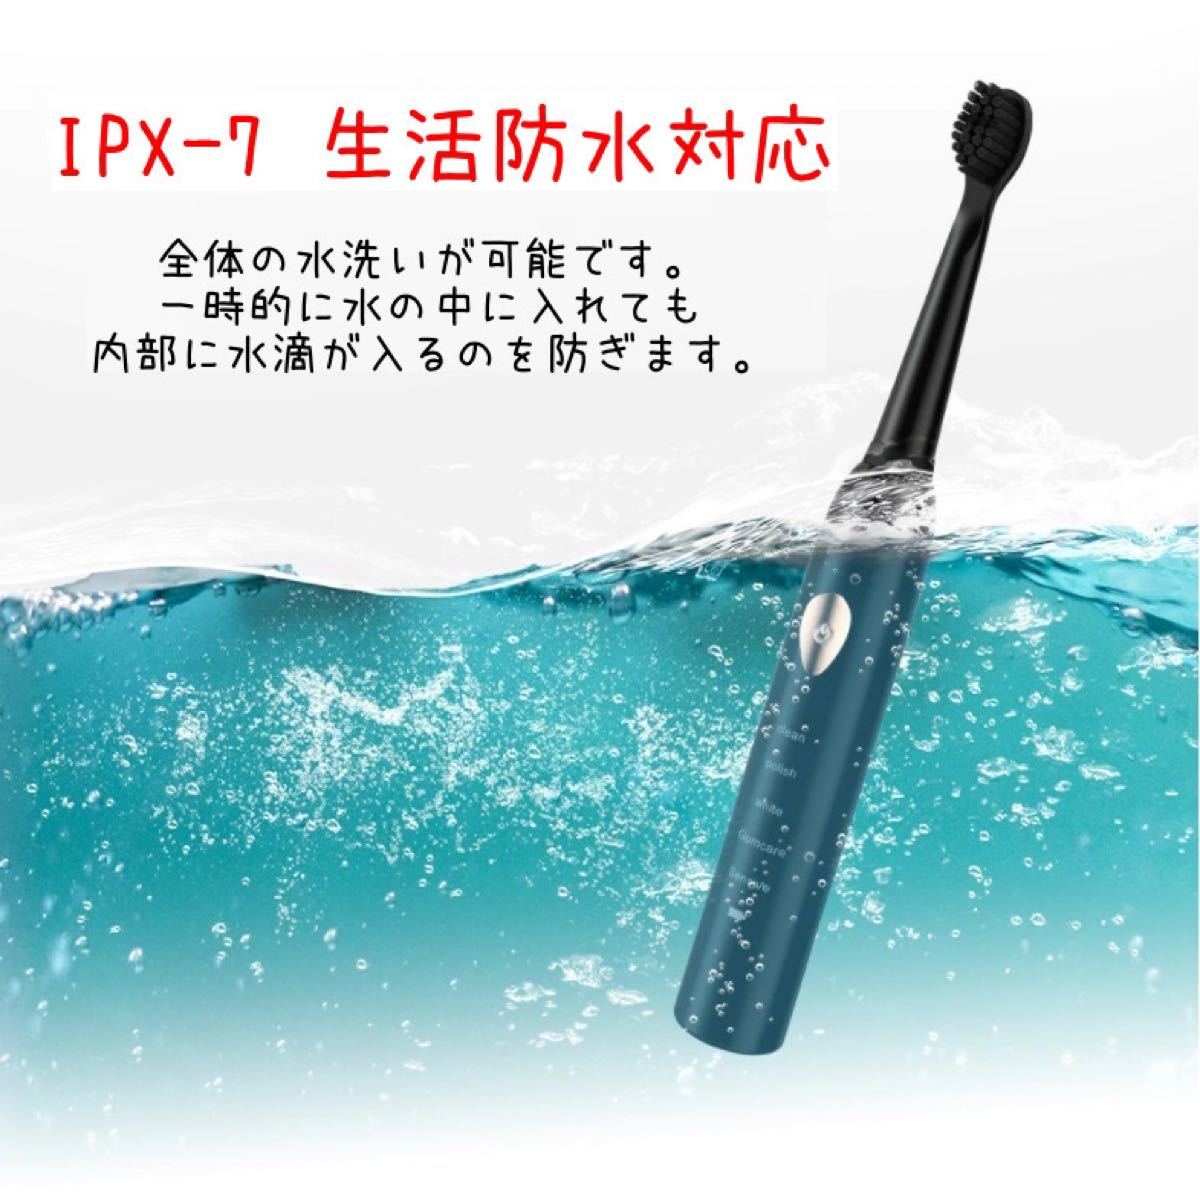 電動歯ブラシ セット ホワイト 5つのモード切替 ブラシヘッド4本付き 替えブラシ 防水  USB充電 歯ブラシ 高速振動 